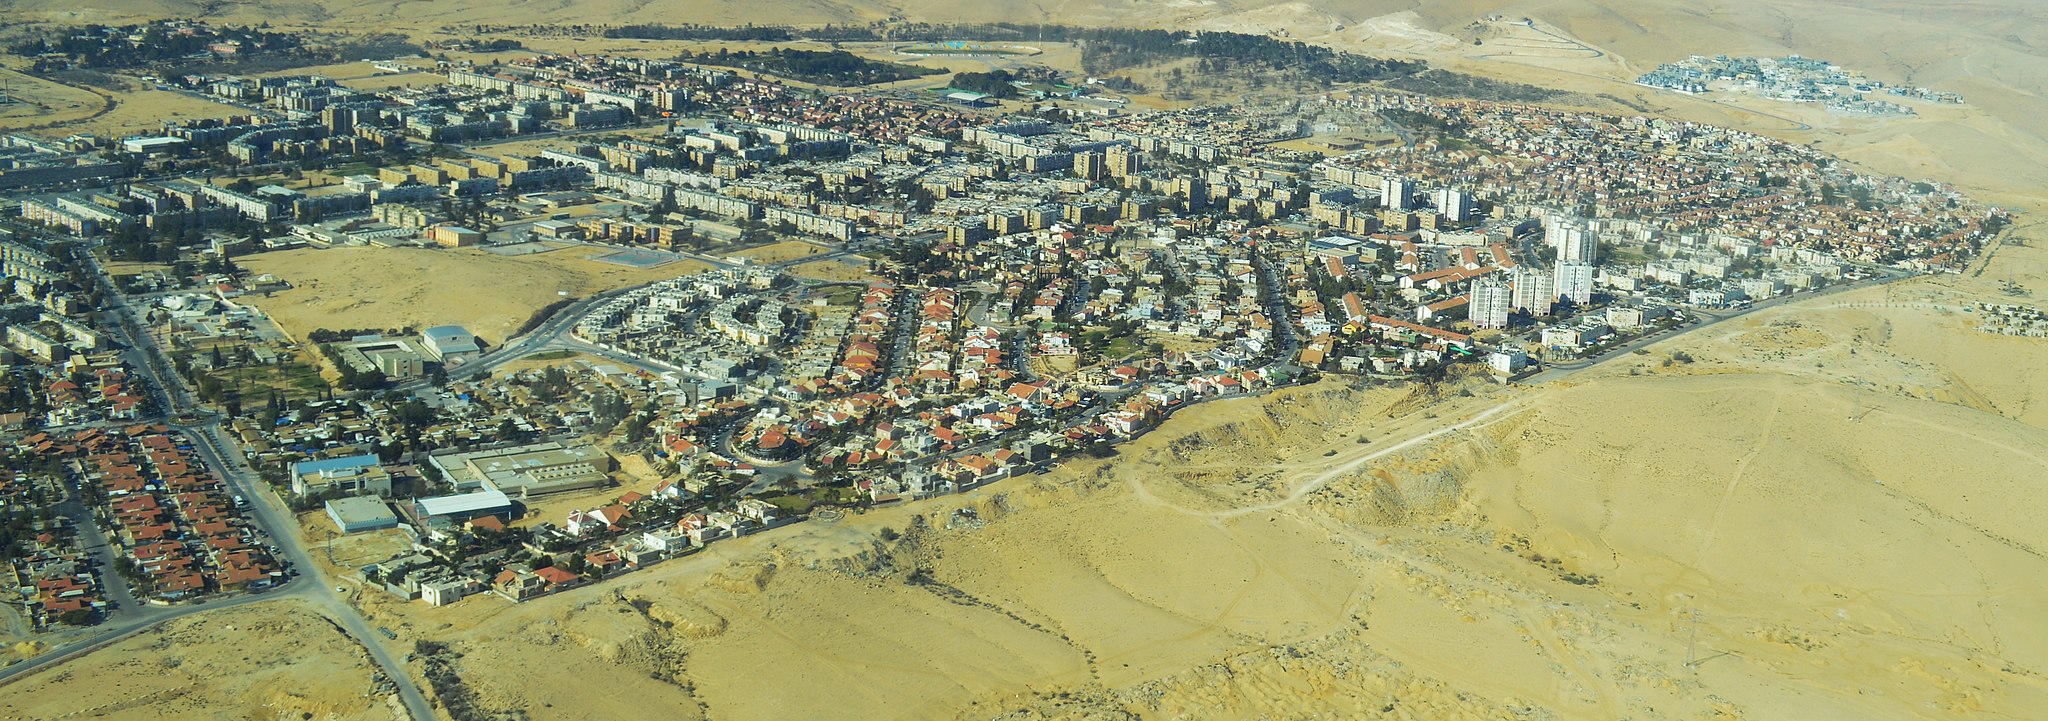 Vista aérea de Dimona, la ciudad en Israel donde se encuentra la nueva planta de la empresa Brenmiller Energy. Foto: Amos Meron/ CC BY-SA 3.0 via Wikimedia Commons.